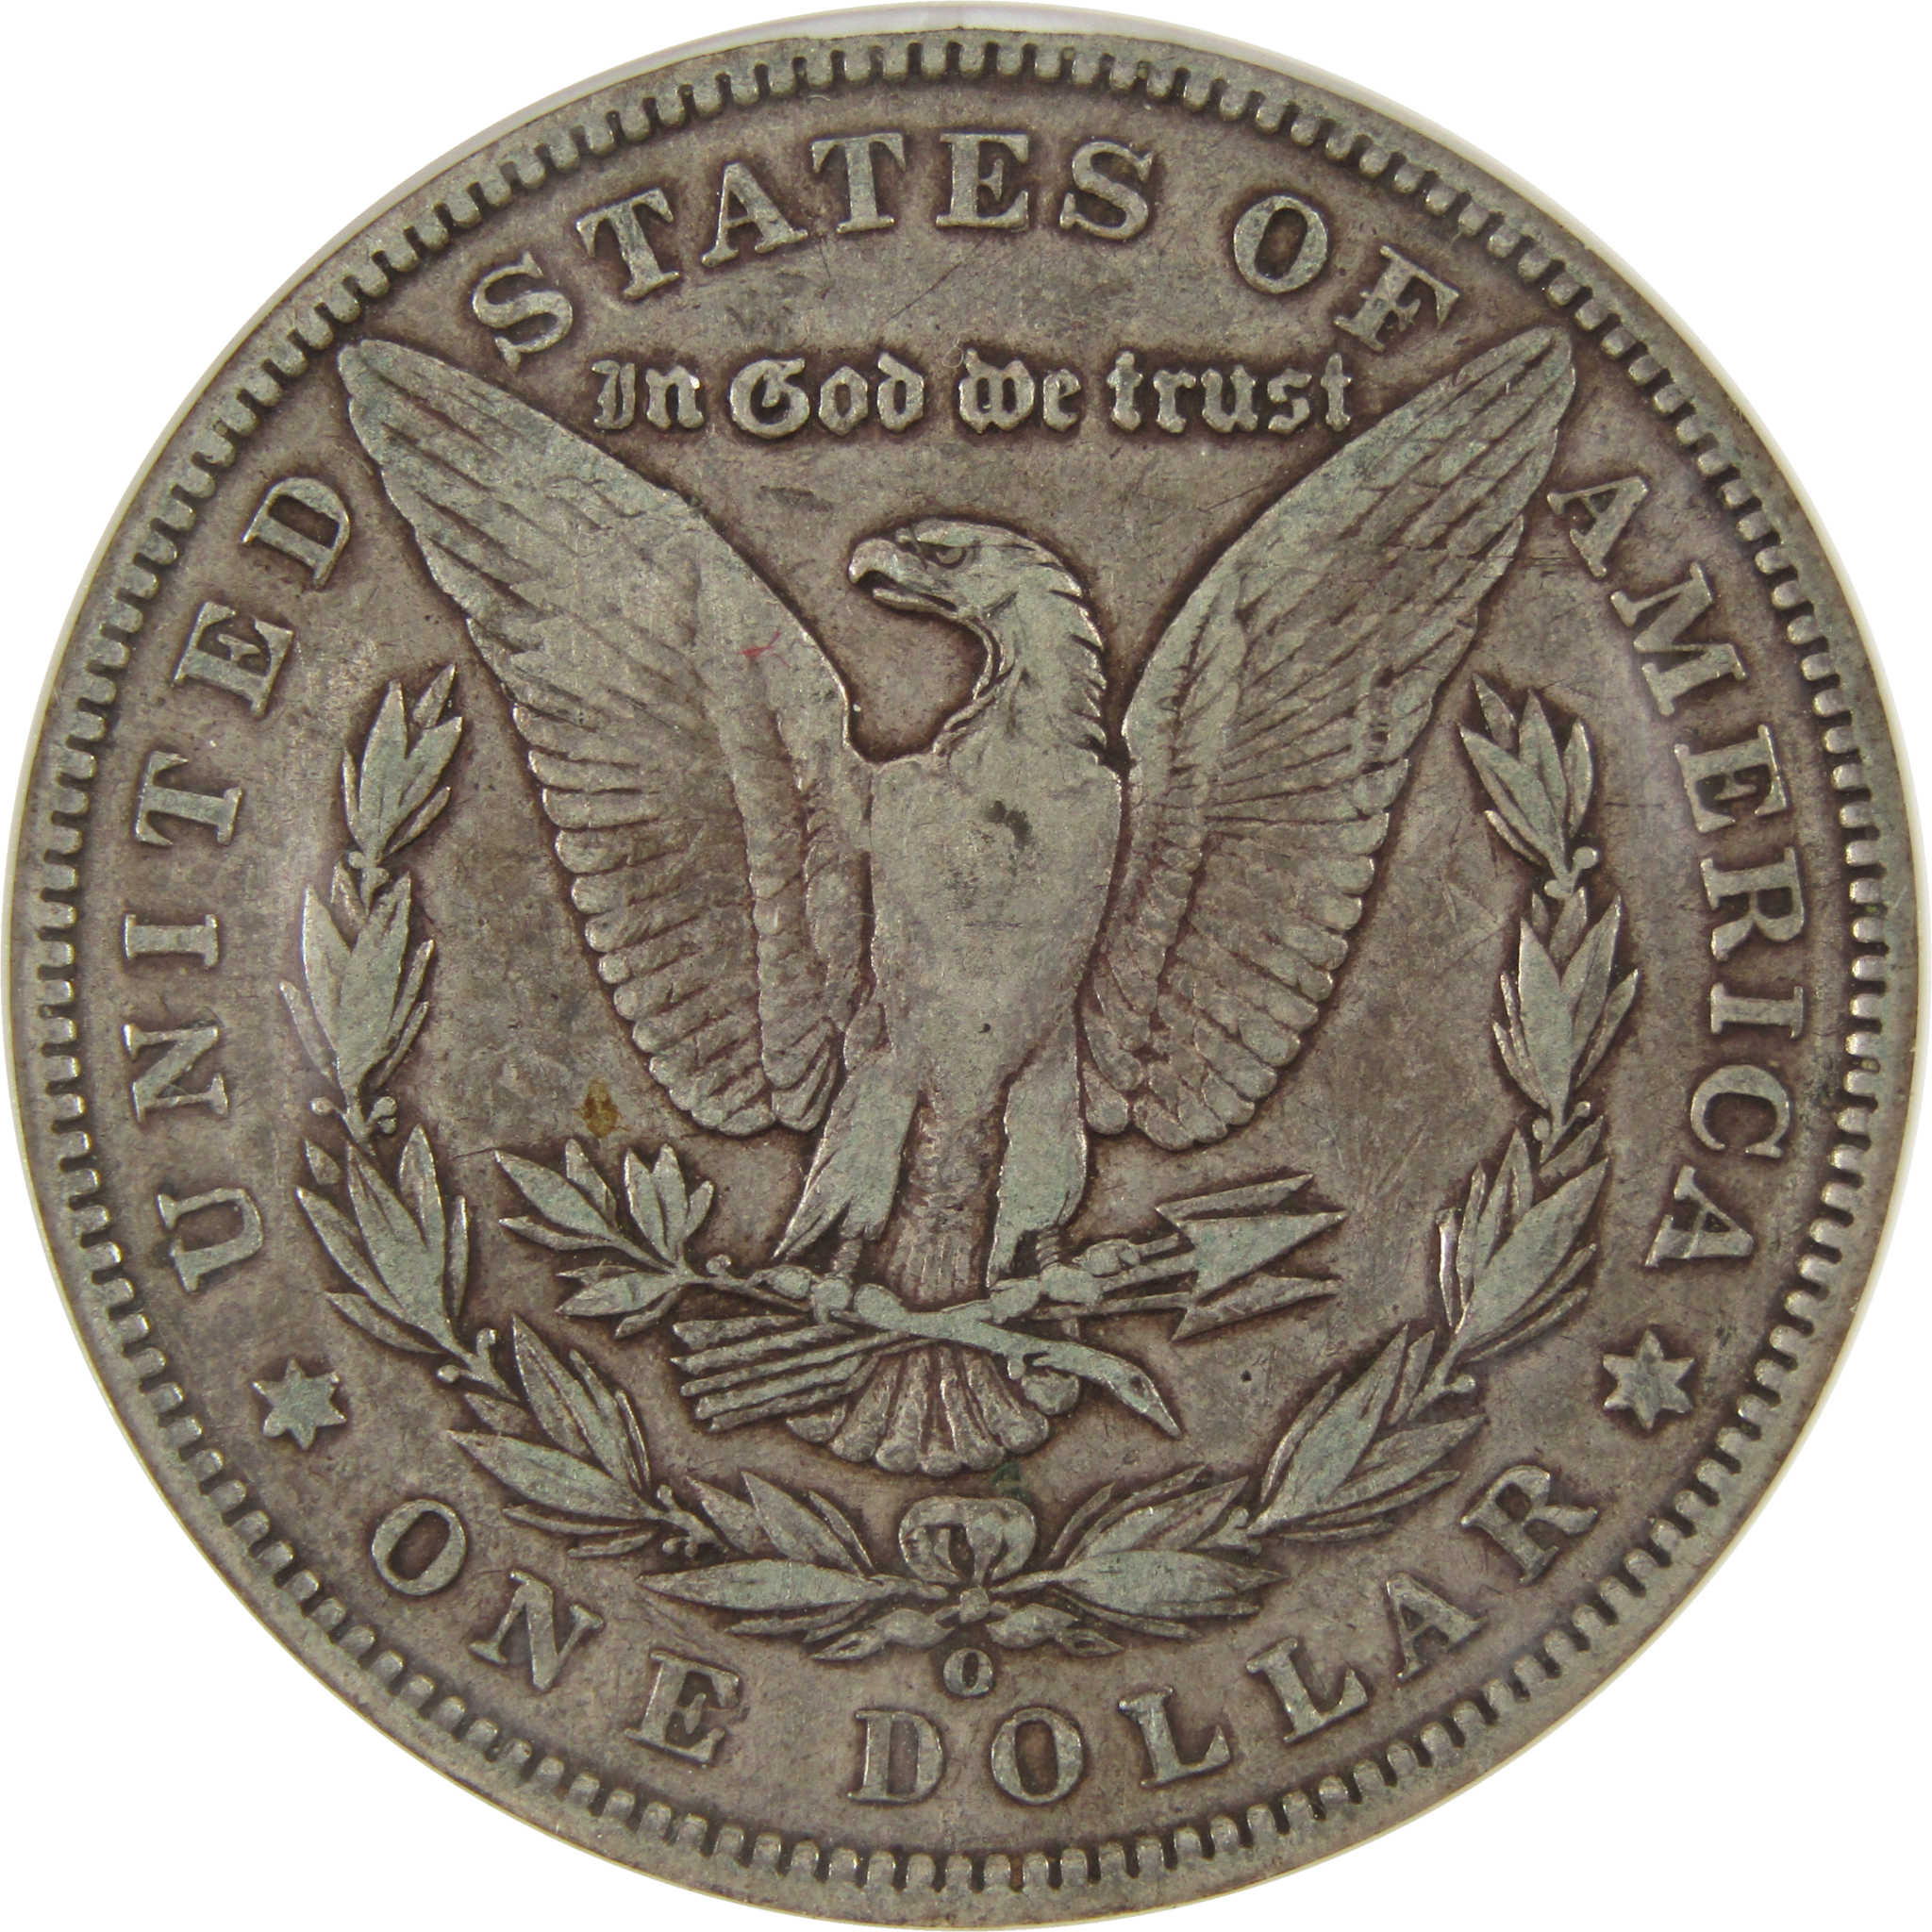 1893 O Morgan Dollar VF 35 ANACS 90% Silver $1 Coin SKU:I8065 - Morgan coin - Morgan silver dollar - Morgan silver dollar for sale - Profile Coins &amp; Collectibles